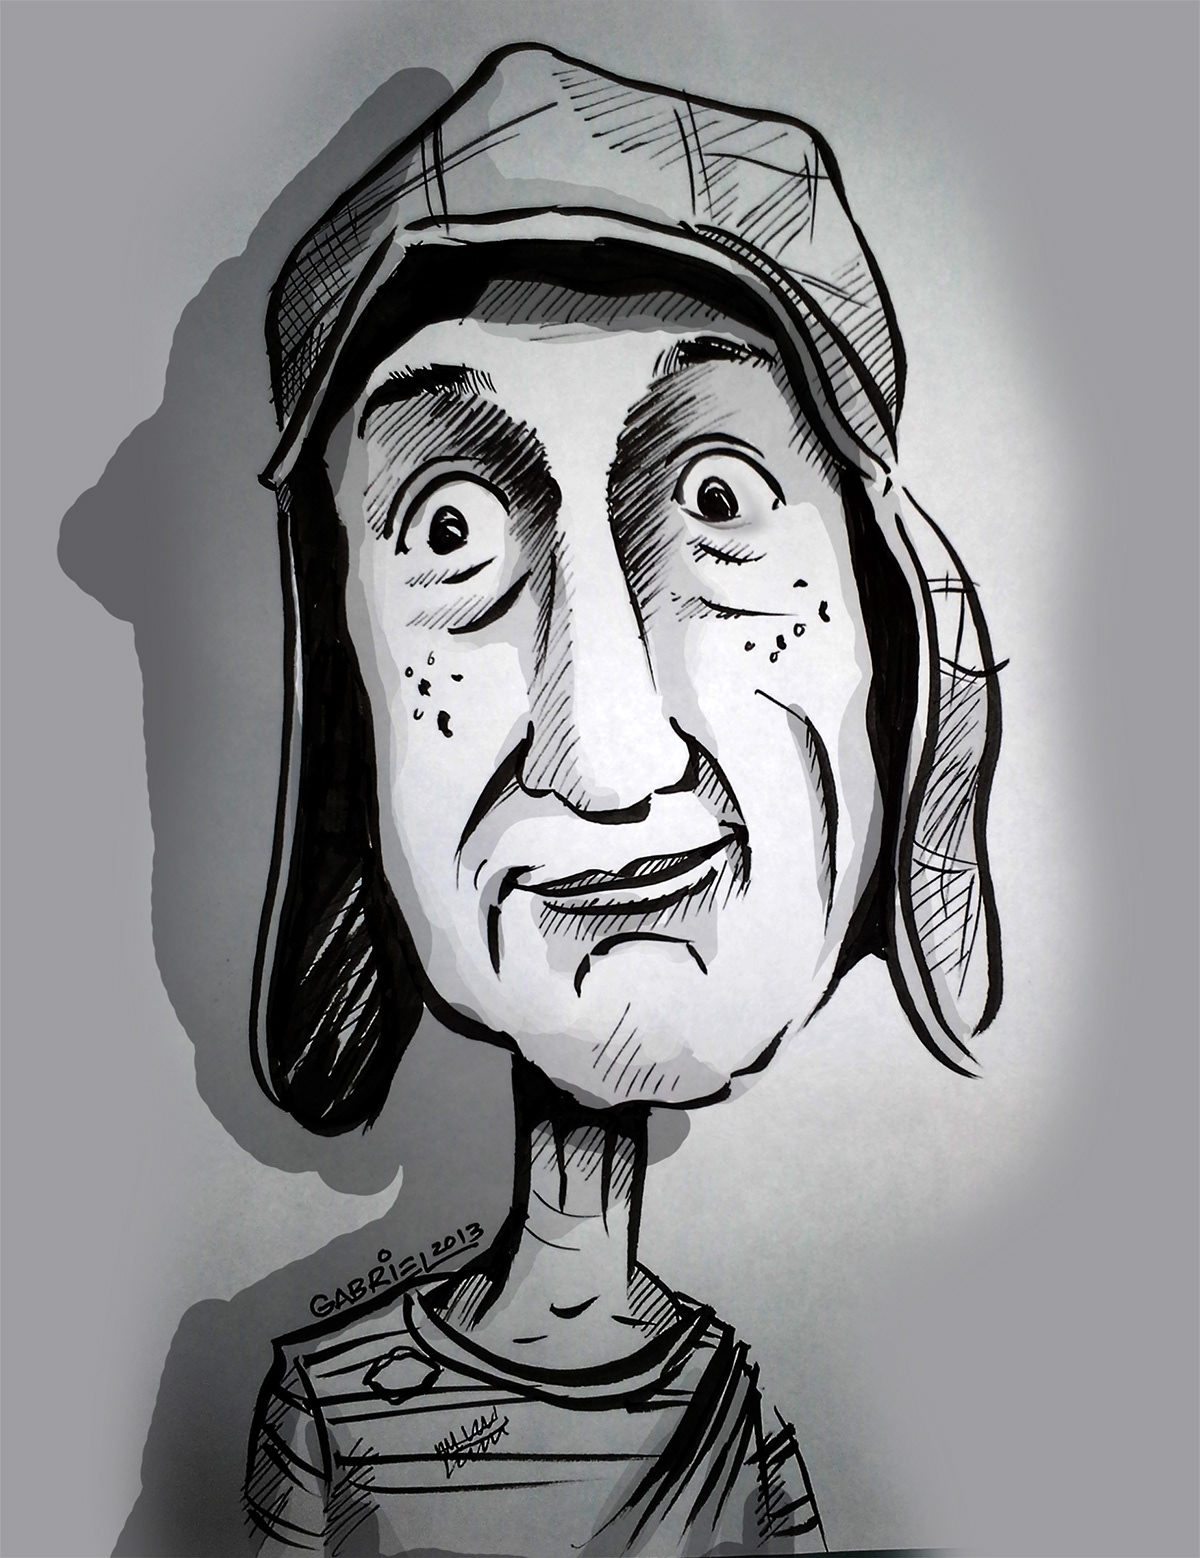 El chavo del chespirito cartoon dibujo Gabriel contreras COLINDRES caricatura personaje